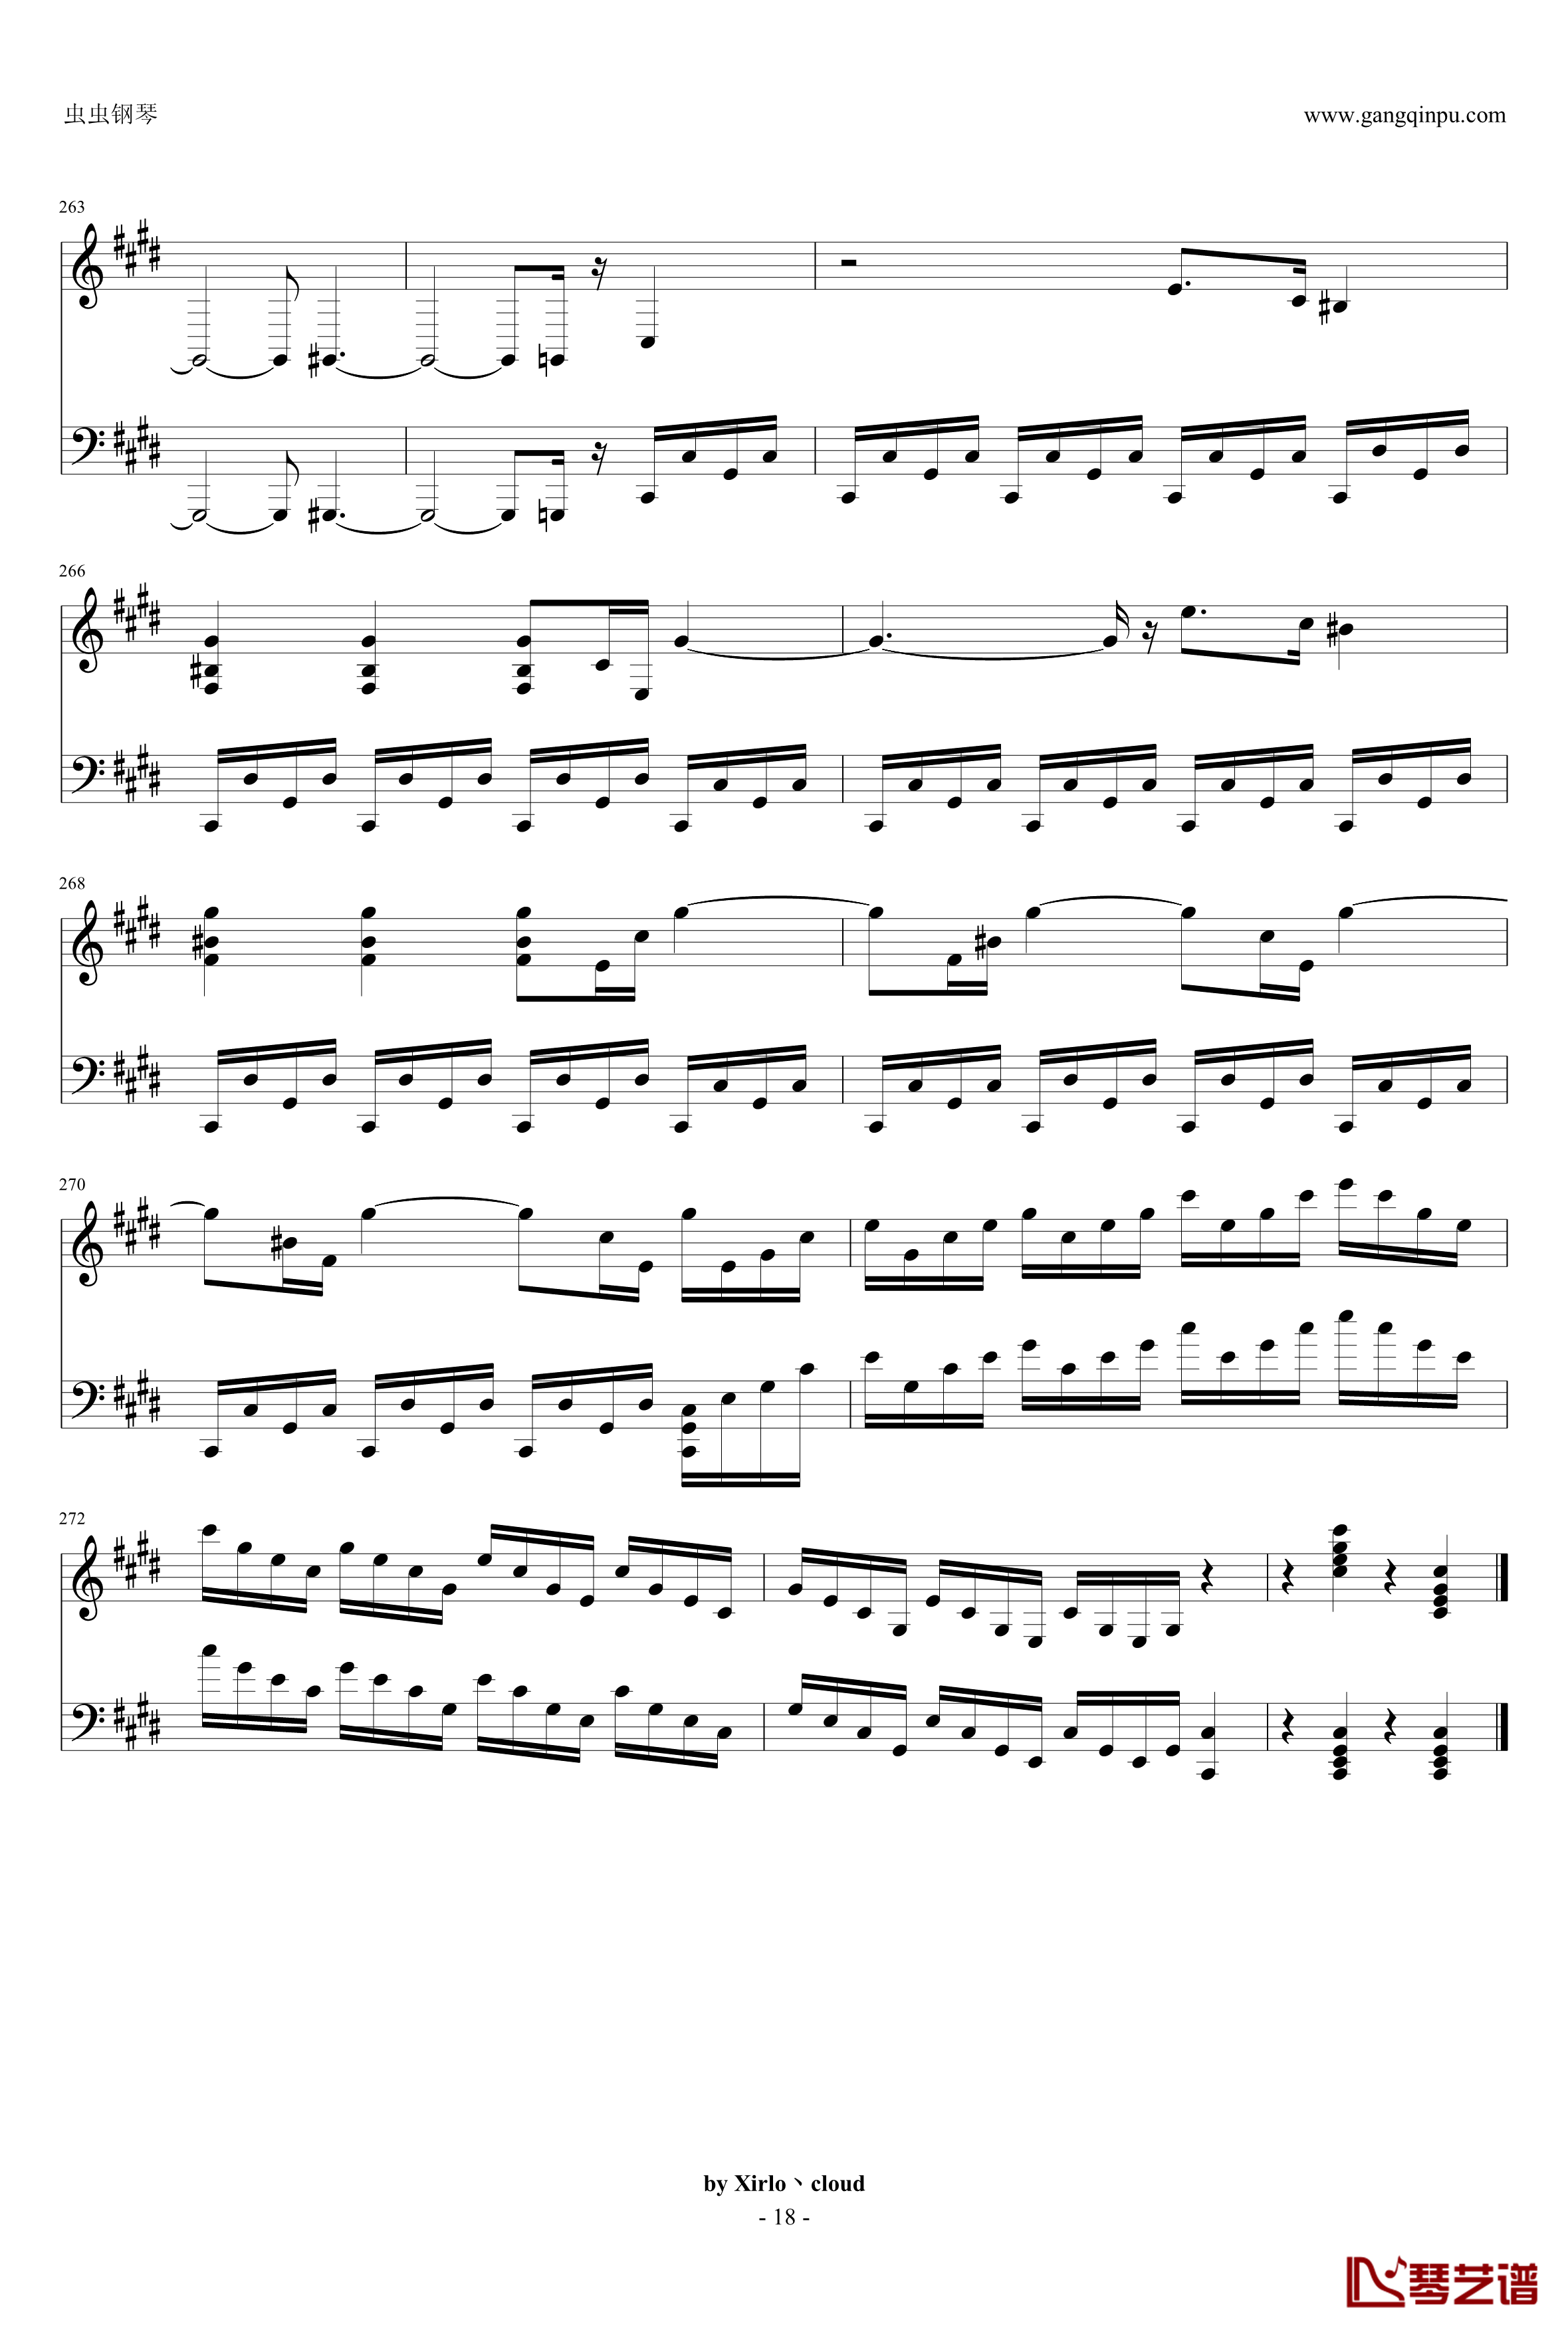 月光奏鸣曲钢琴谱-改编版-贝多芬-beethoven18